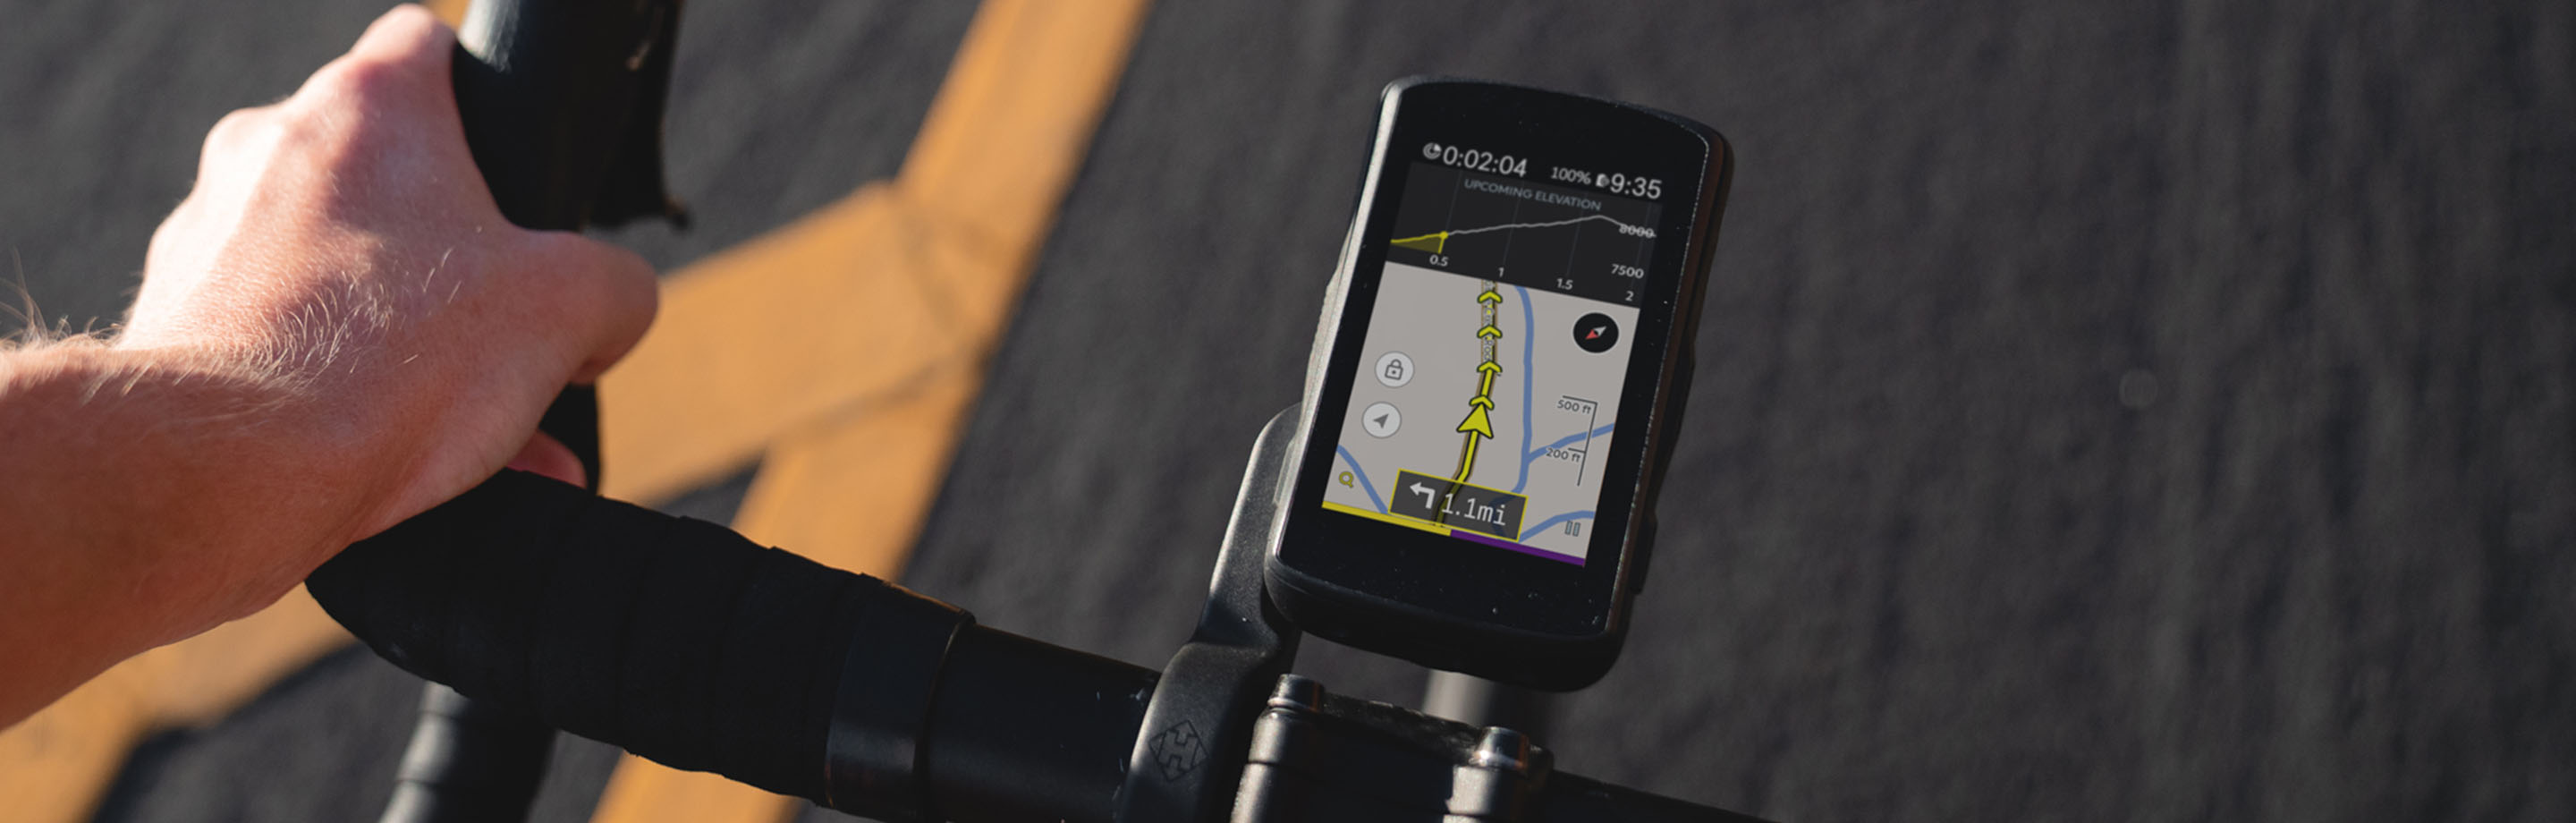 Hammerhead fietscomputers - navigatie & vermogensmeting voor jouw fietservaring